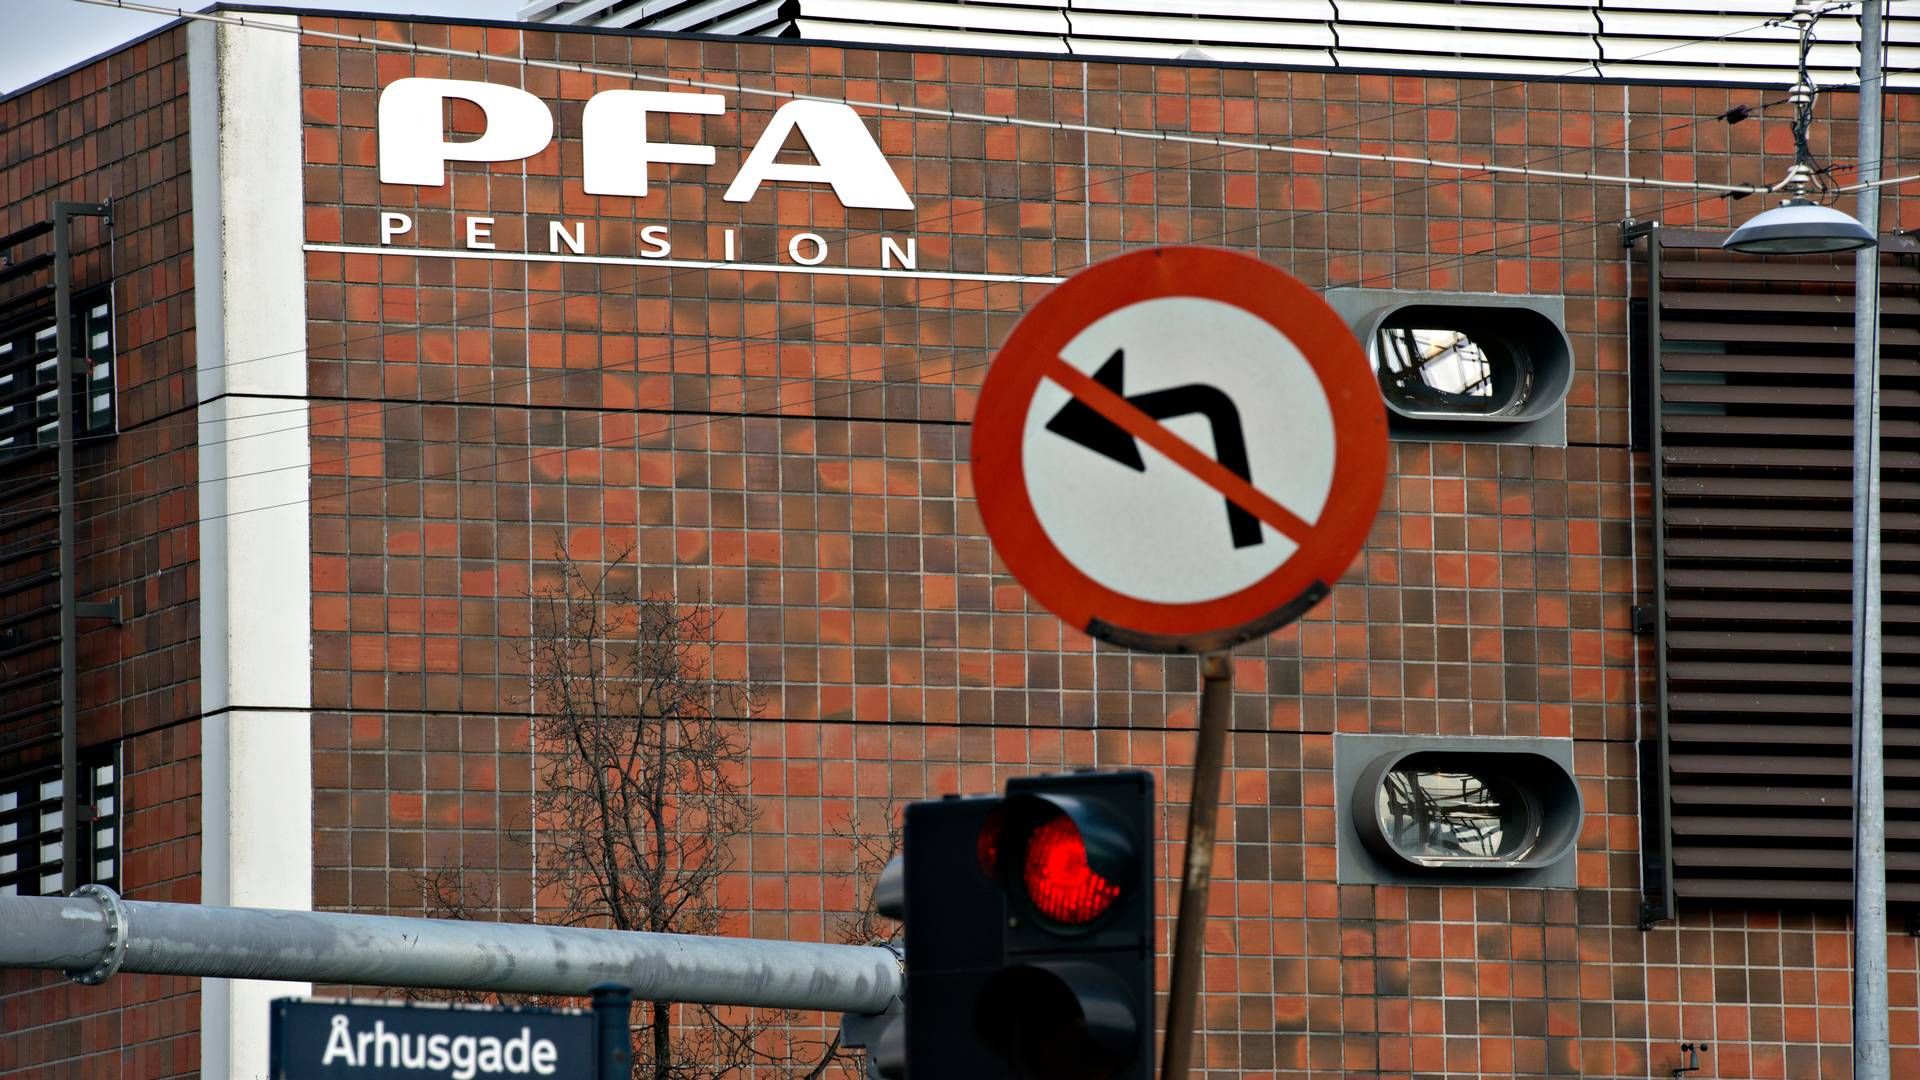 PFA er landets største kommercielle pensionsselskab med 1,3 mio. kunder. | Foto: Lars Krabbe/Jyllands-Posten/Ritzau Scanpix